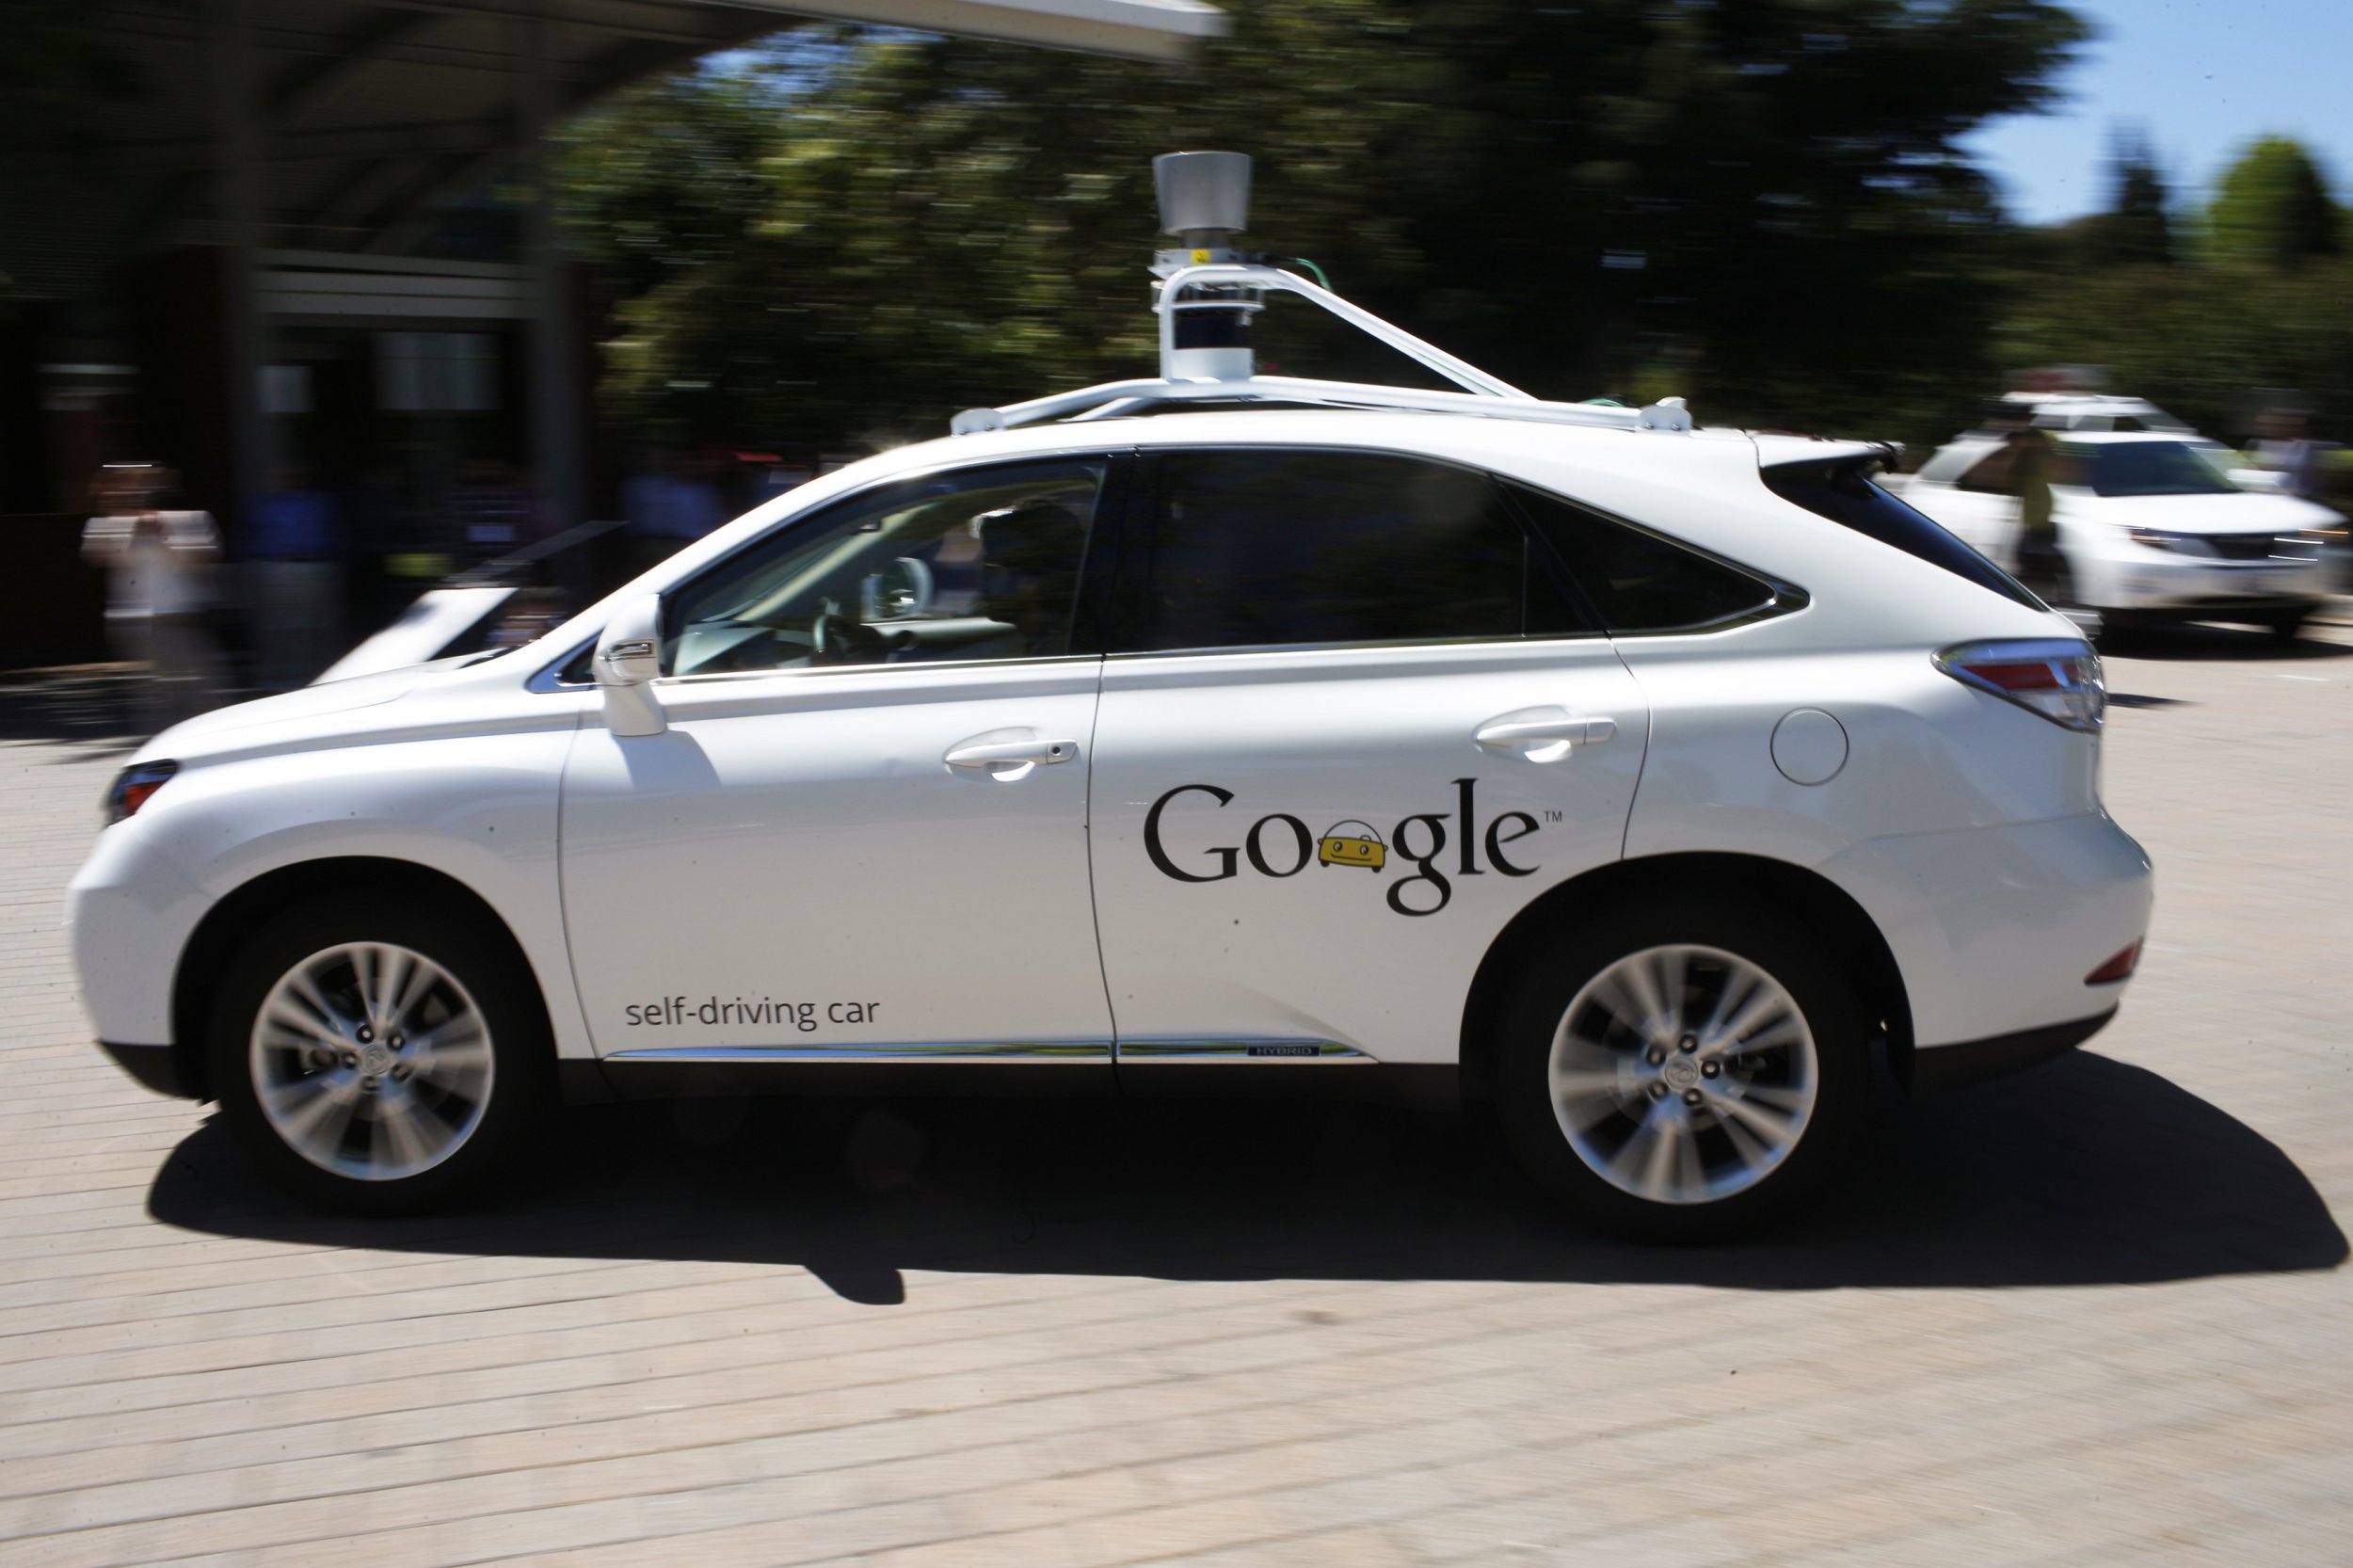  Google self-driving car